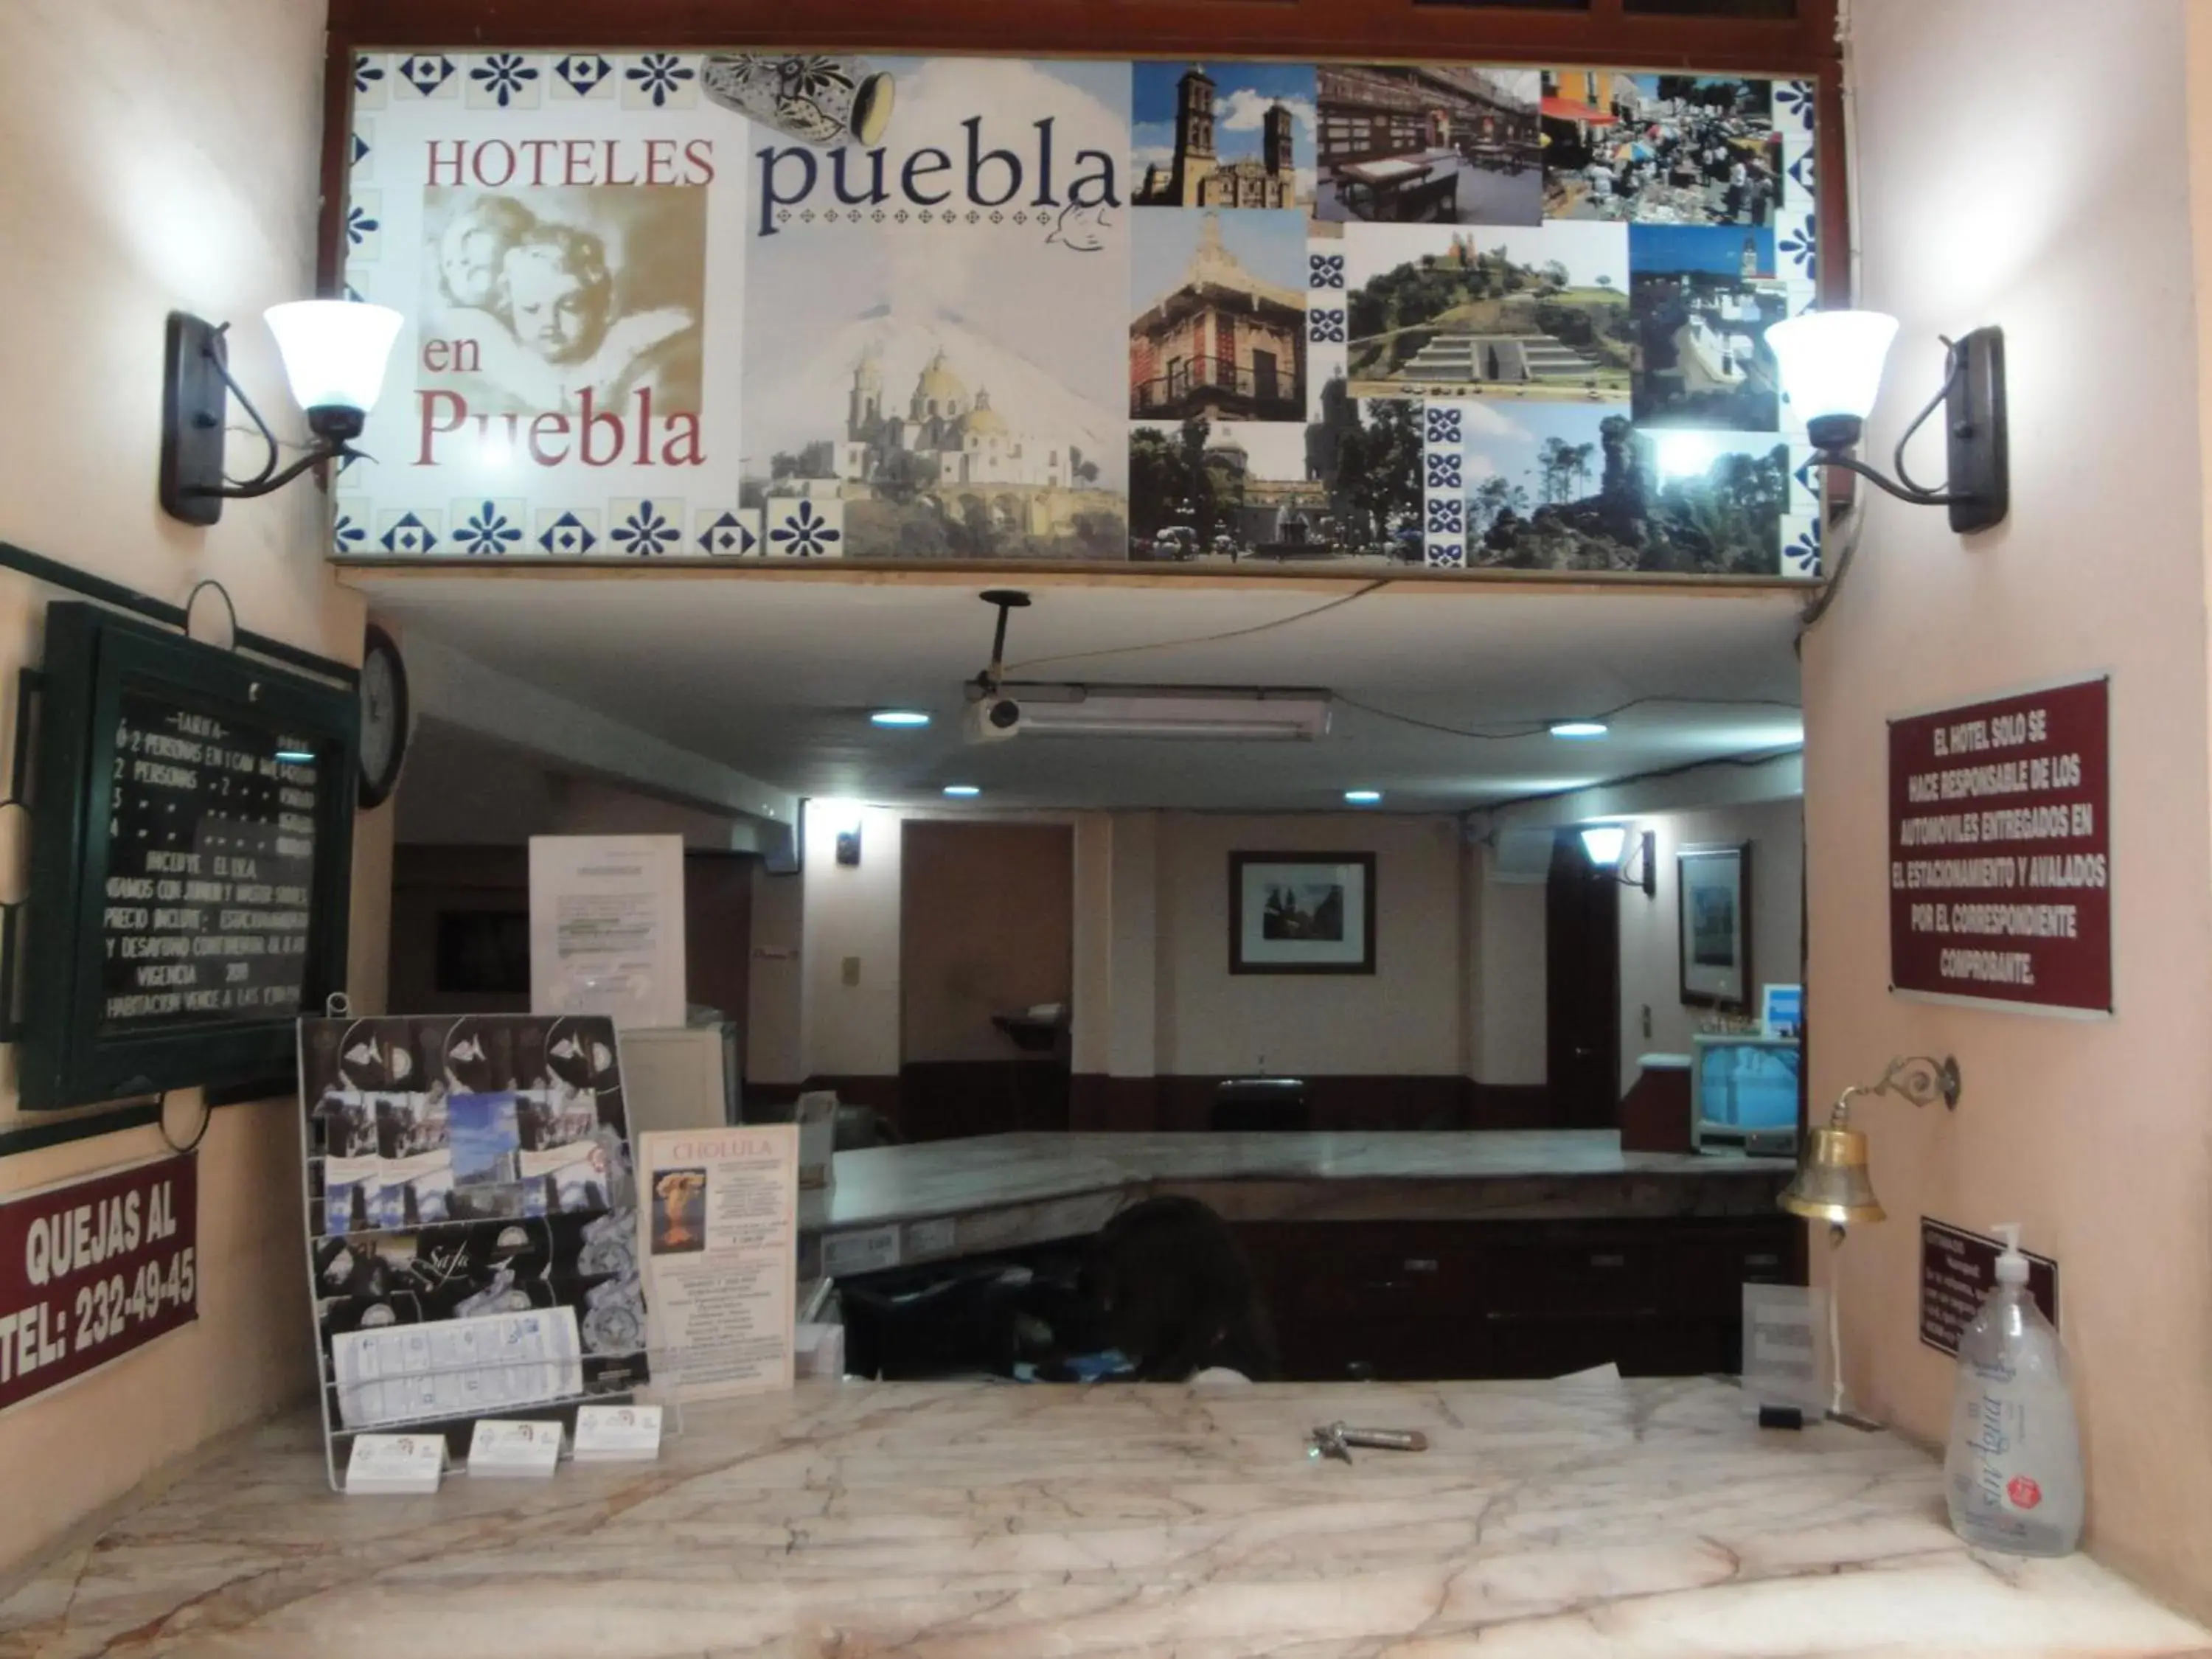 Lobby or reception in Hotel San Angel